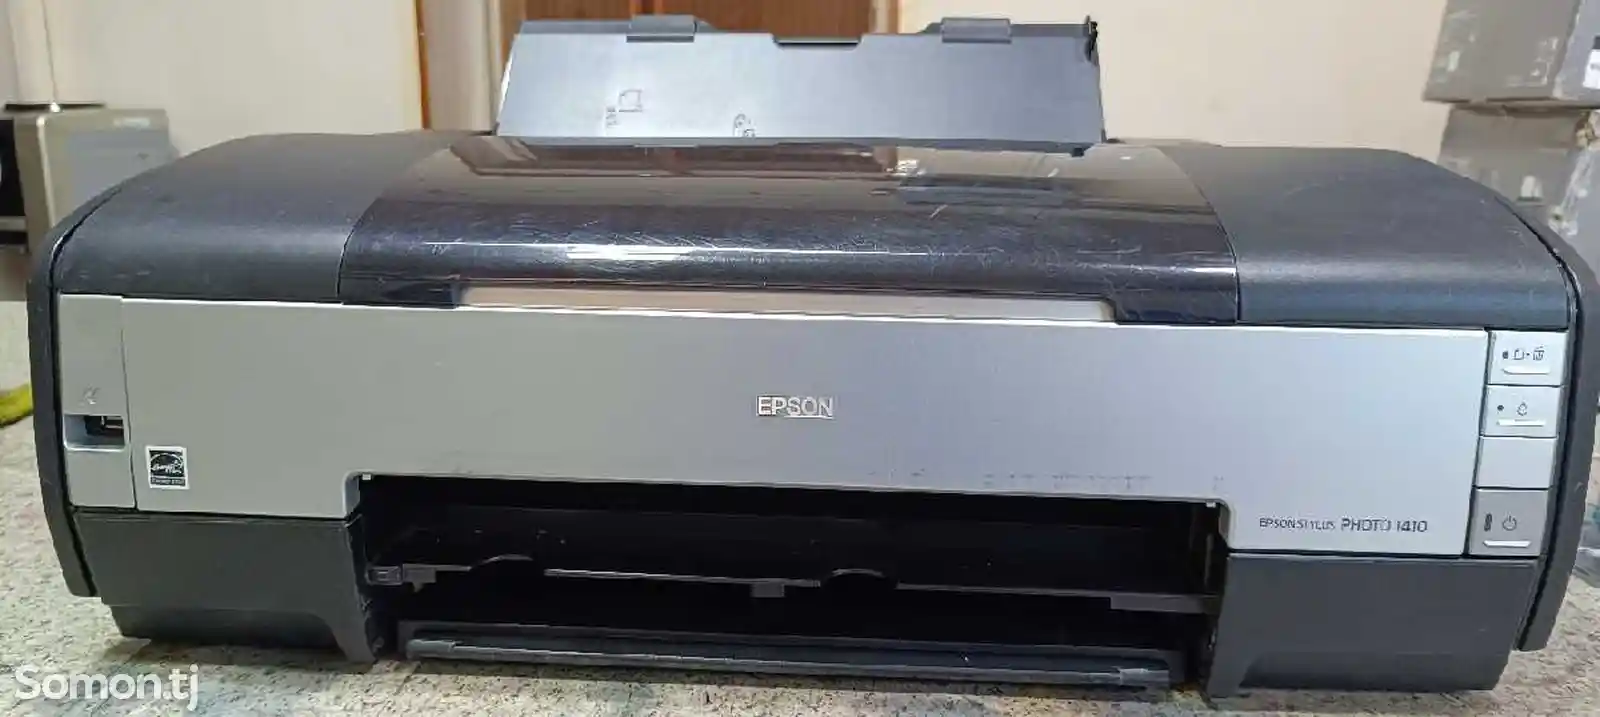 Принтер Epson 1410 a3-1